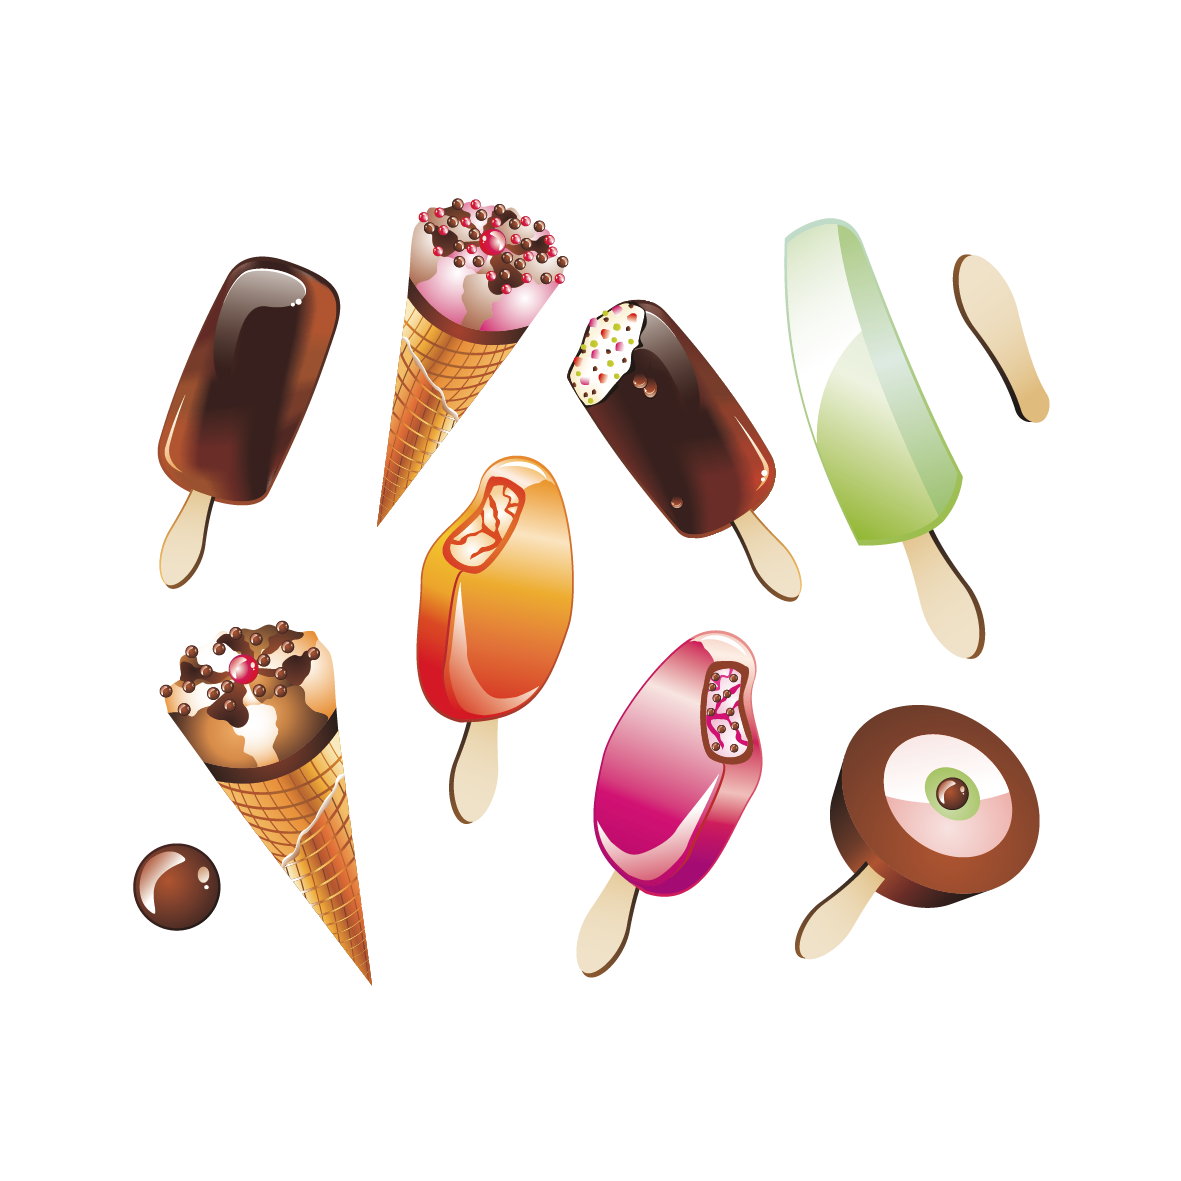 تصویر و عکس PNG بستنی های لاکچری و خوشمزه برای کارهای گرافیکی